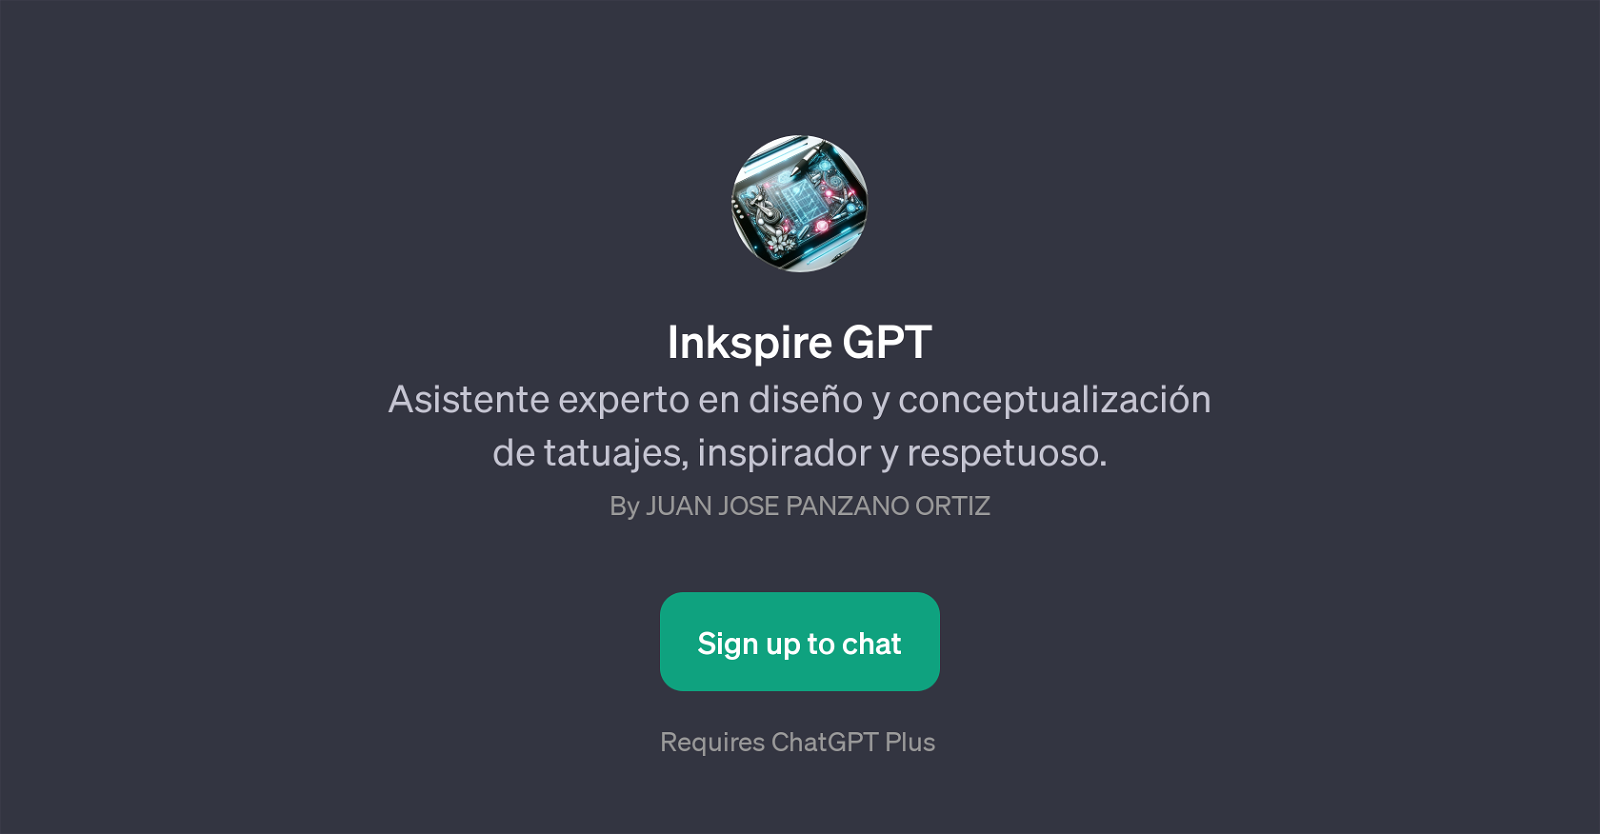 Inkspire GPT website